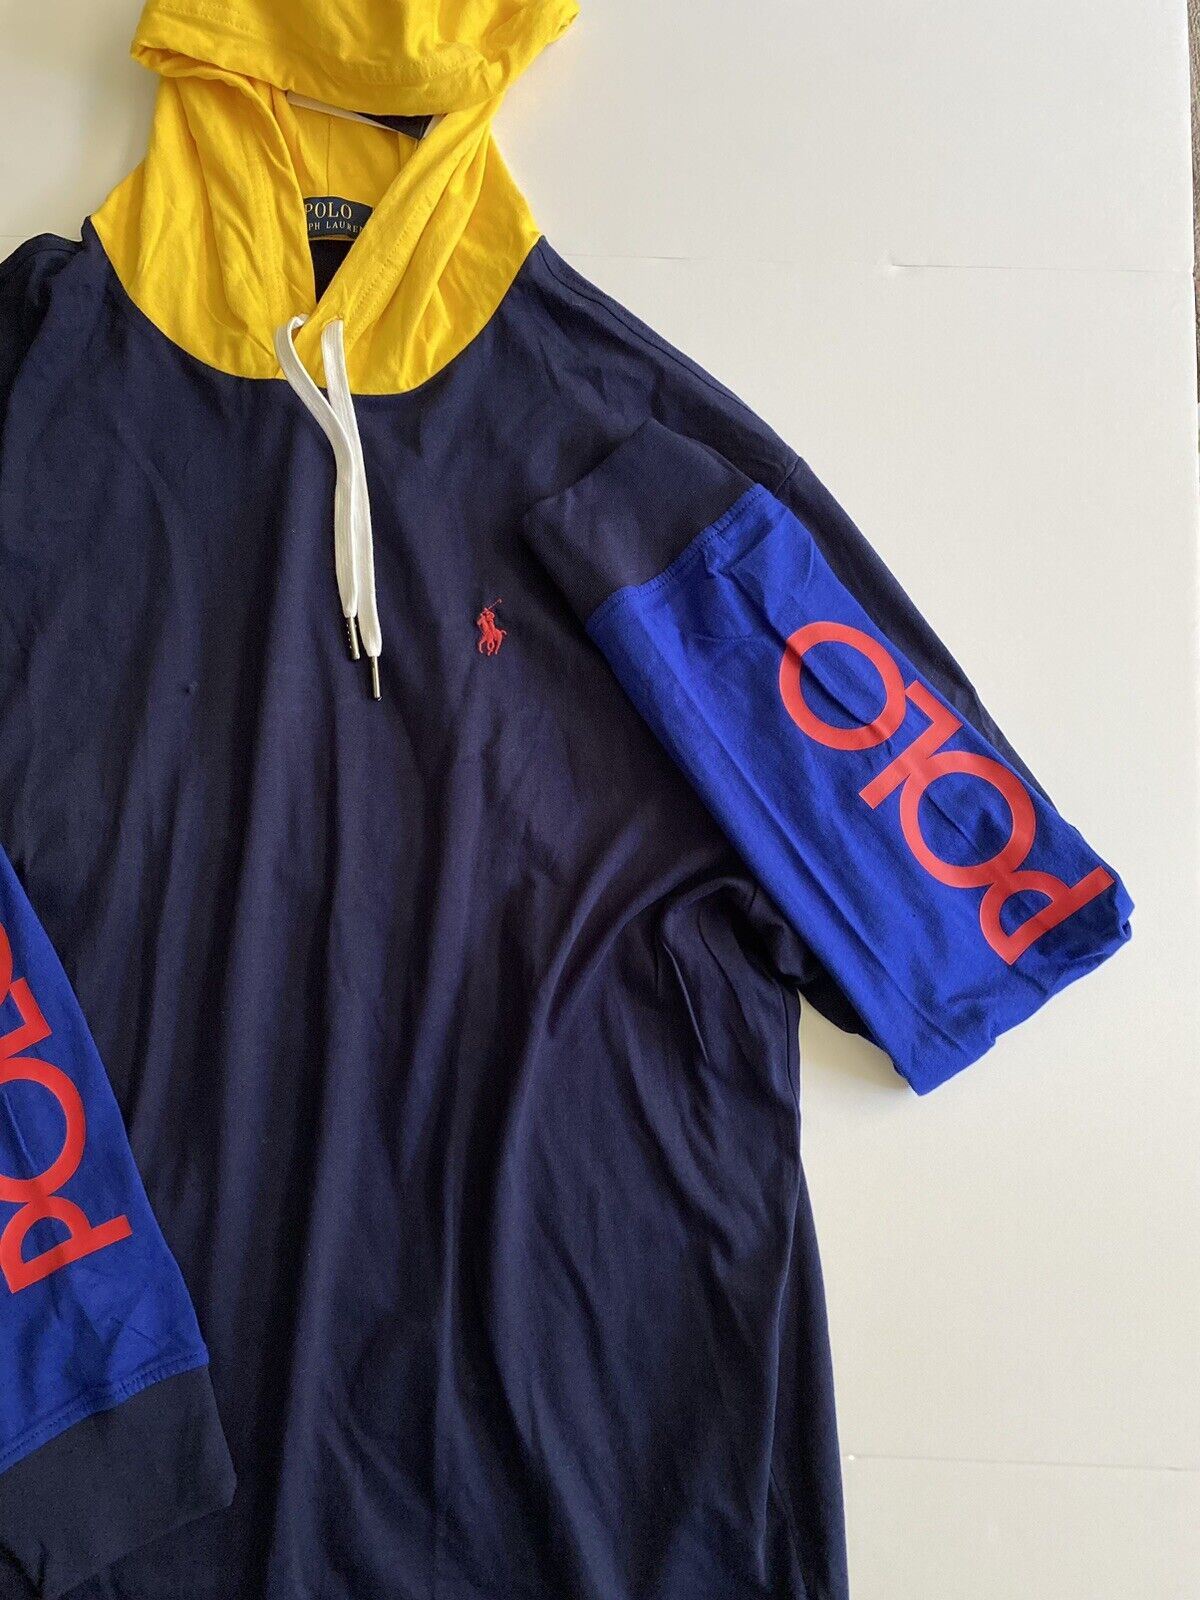 Толстовка с длинным рукавом и фирменным логотипом NWT Polo Ralph Lauren, темно-синяя, L 